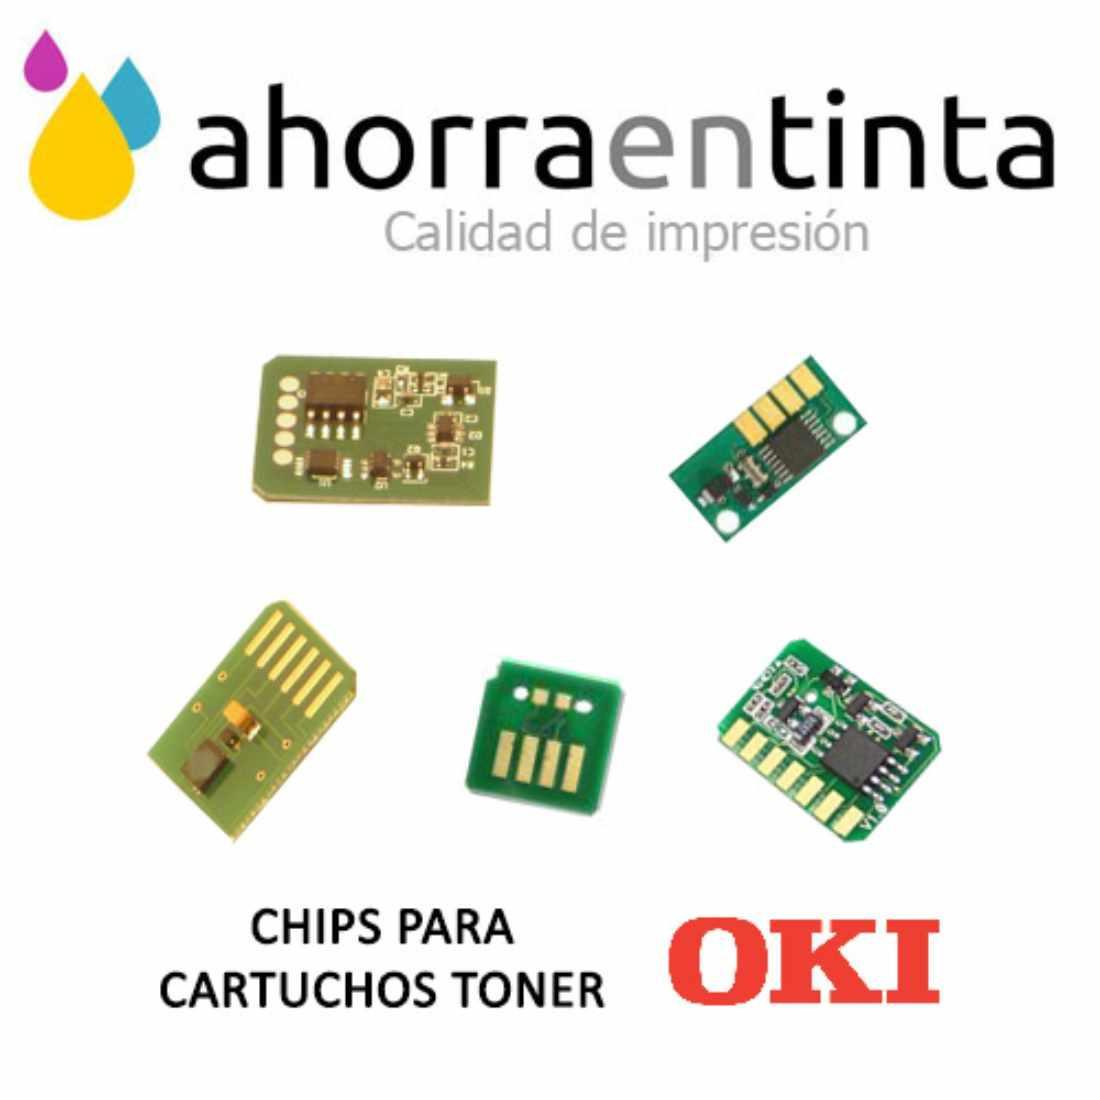 Foto de producto 1 X Chip Magenta para Oki C710